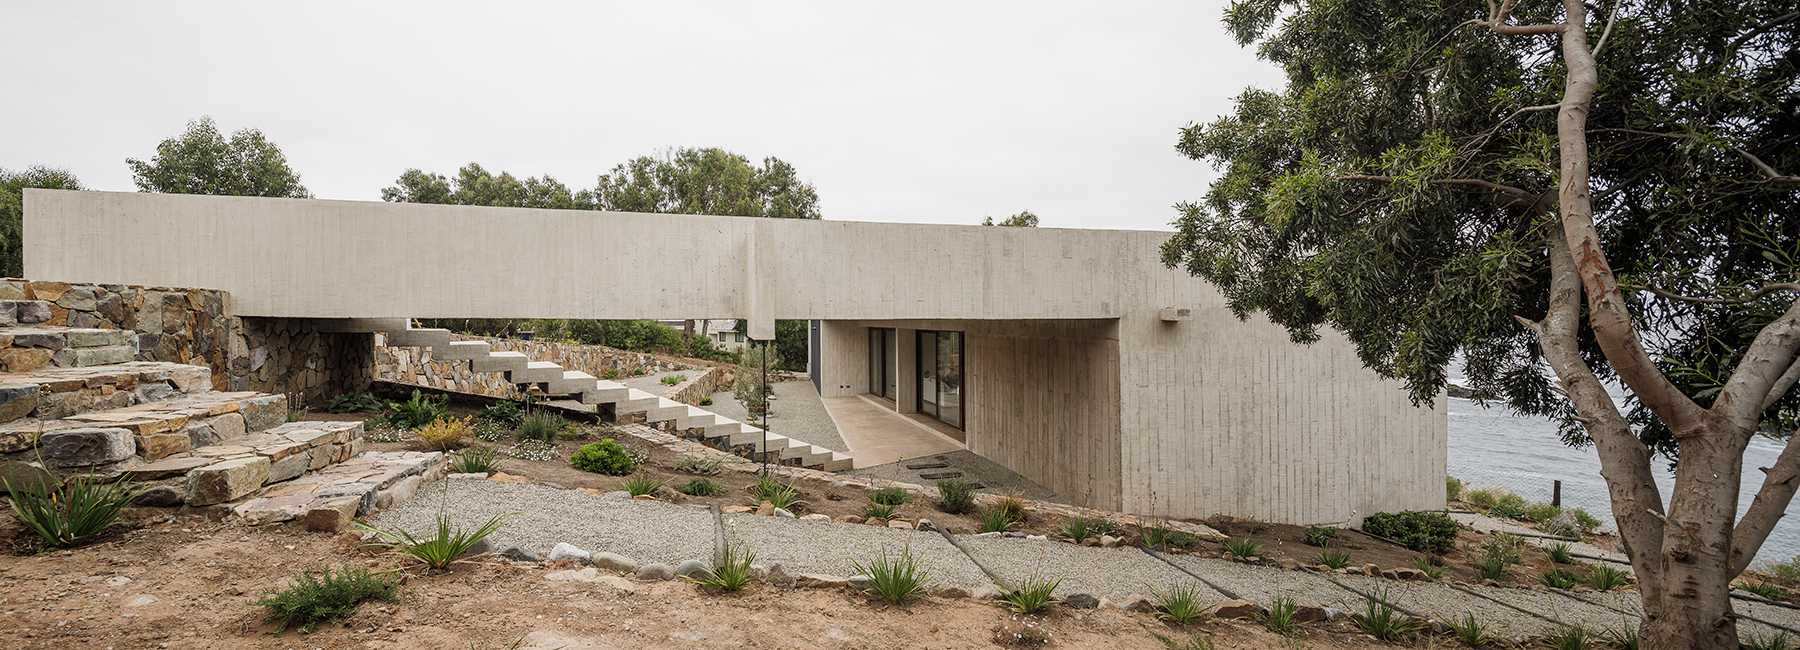 felipe assadi's concrete casa cipolla overlooks the rocky shoreline of a chilean lake